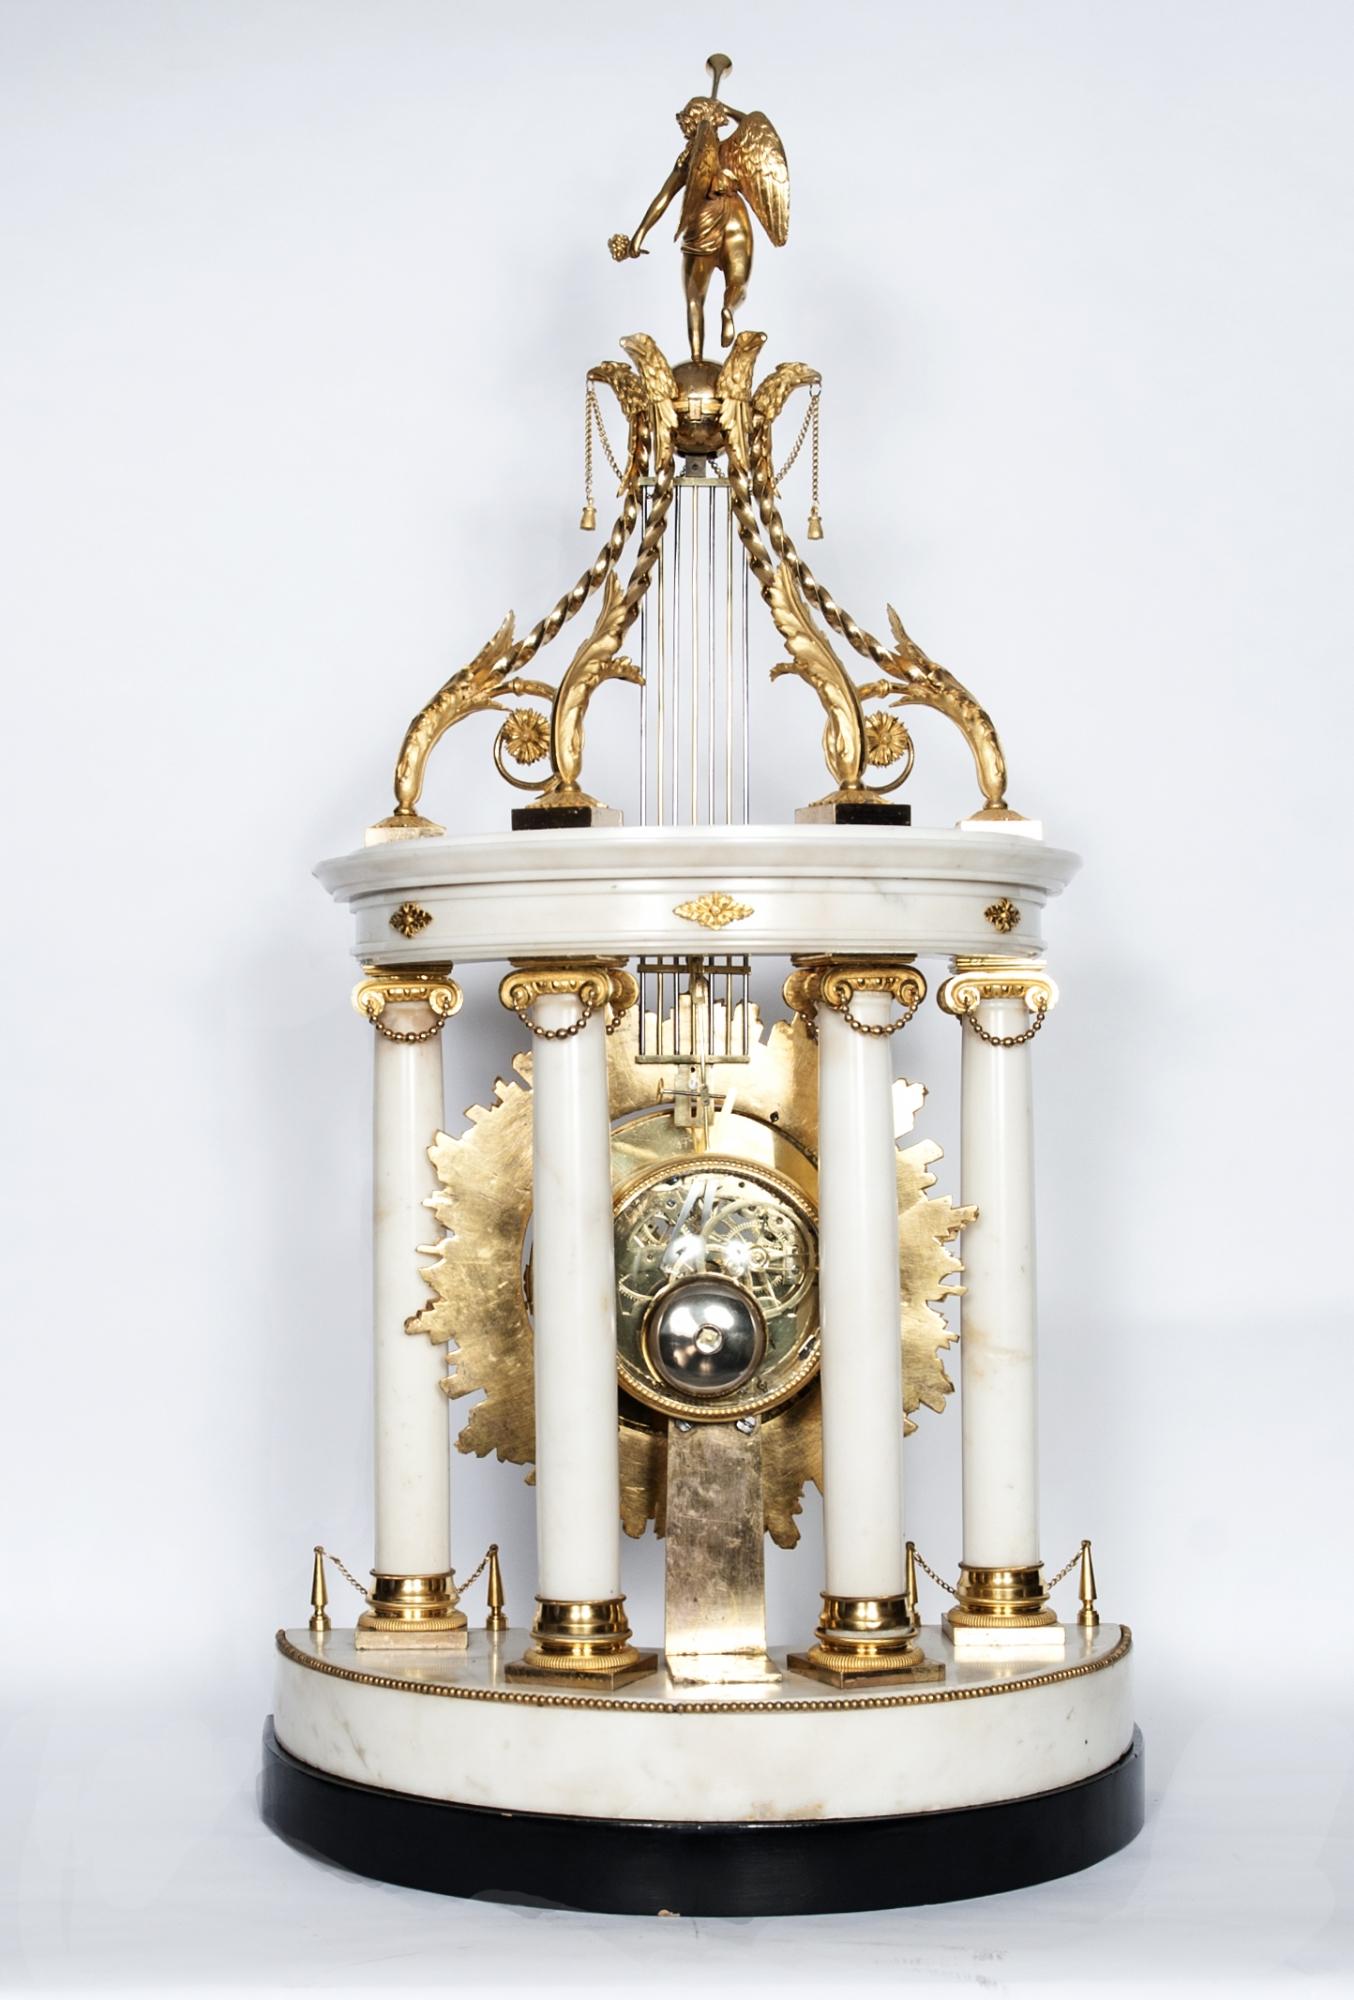 Imposante monumentale Louis XVI-Tempeluhr mit oszillierendem Sonnenpendel, umgeben von Strasskristall, gekrönt von einem weiblichen Engel mit Trompete. Das schöne skelettierte Uhrwerk mit Datum und zentralem Sekundenzeiger. Signiert auf einem